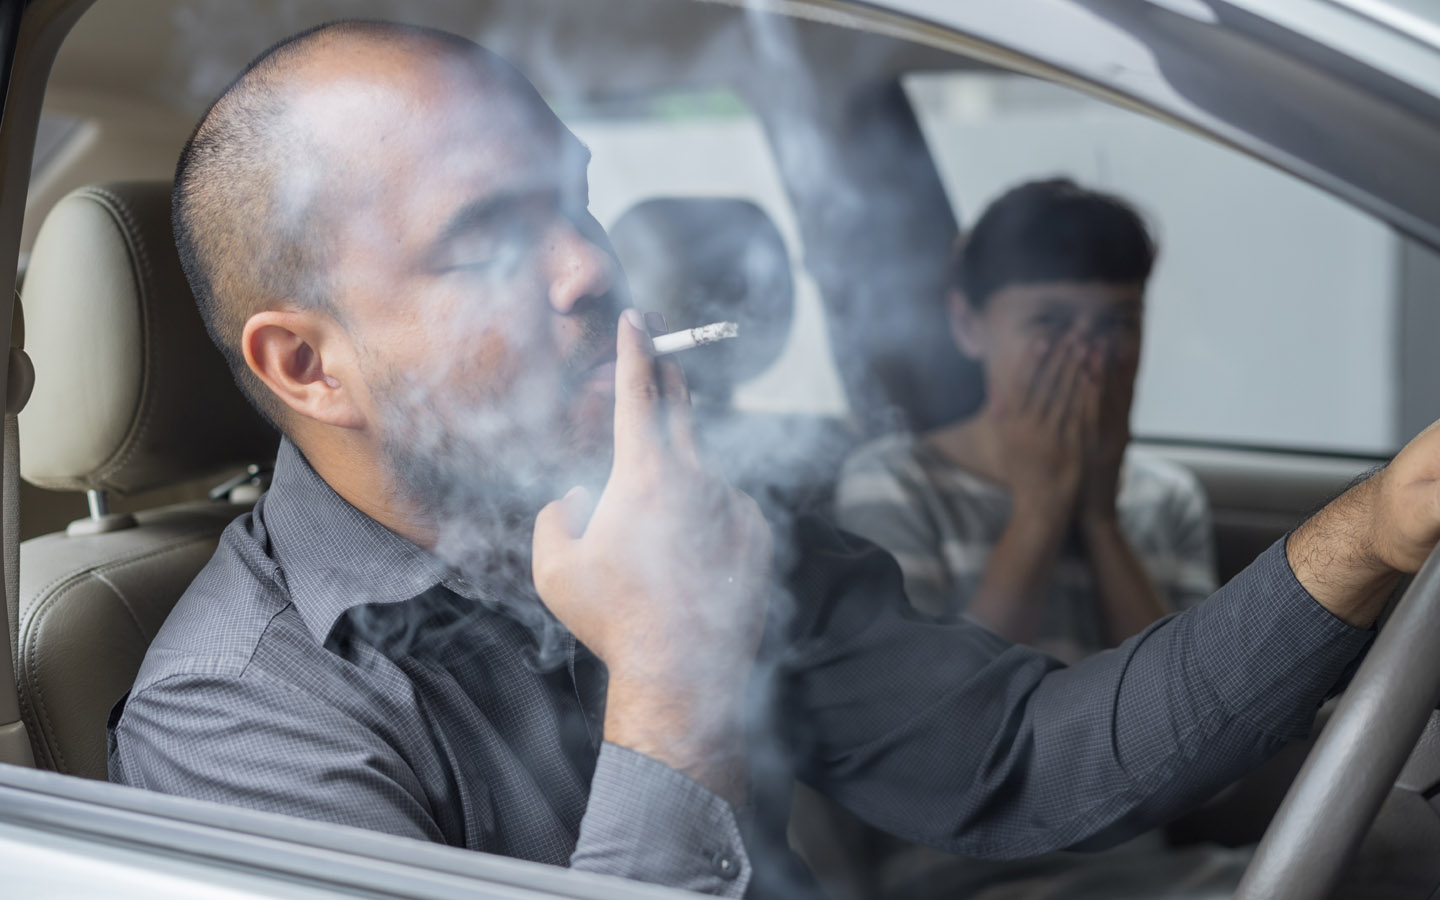 Мужчина курит сигарету в машине, в то время как пассажирка испытывает отвращение к дыму